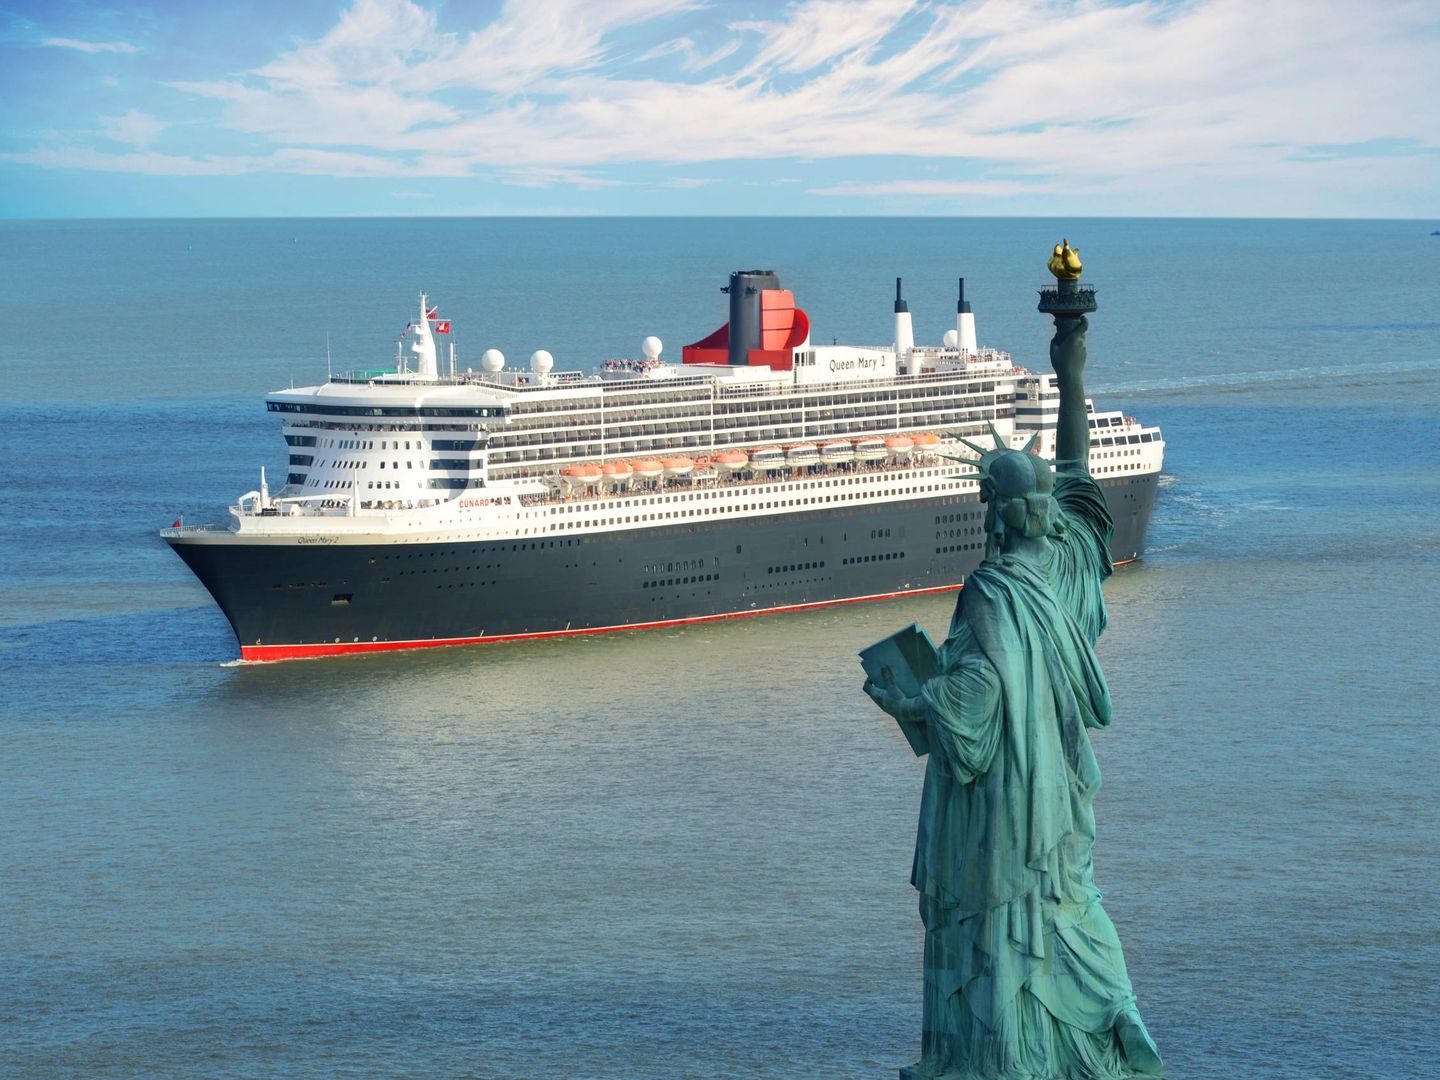  Queen Mary 2 en Nueva York (Viajes El Corte Inglés). 